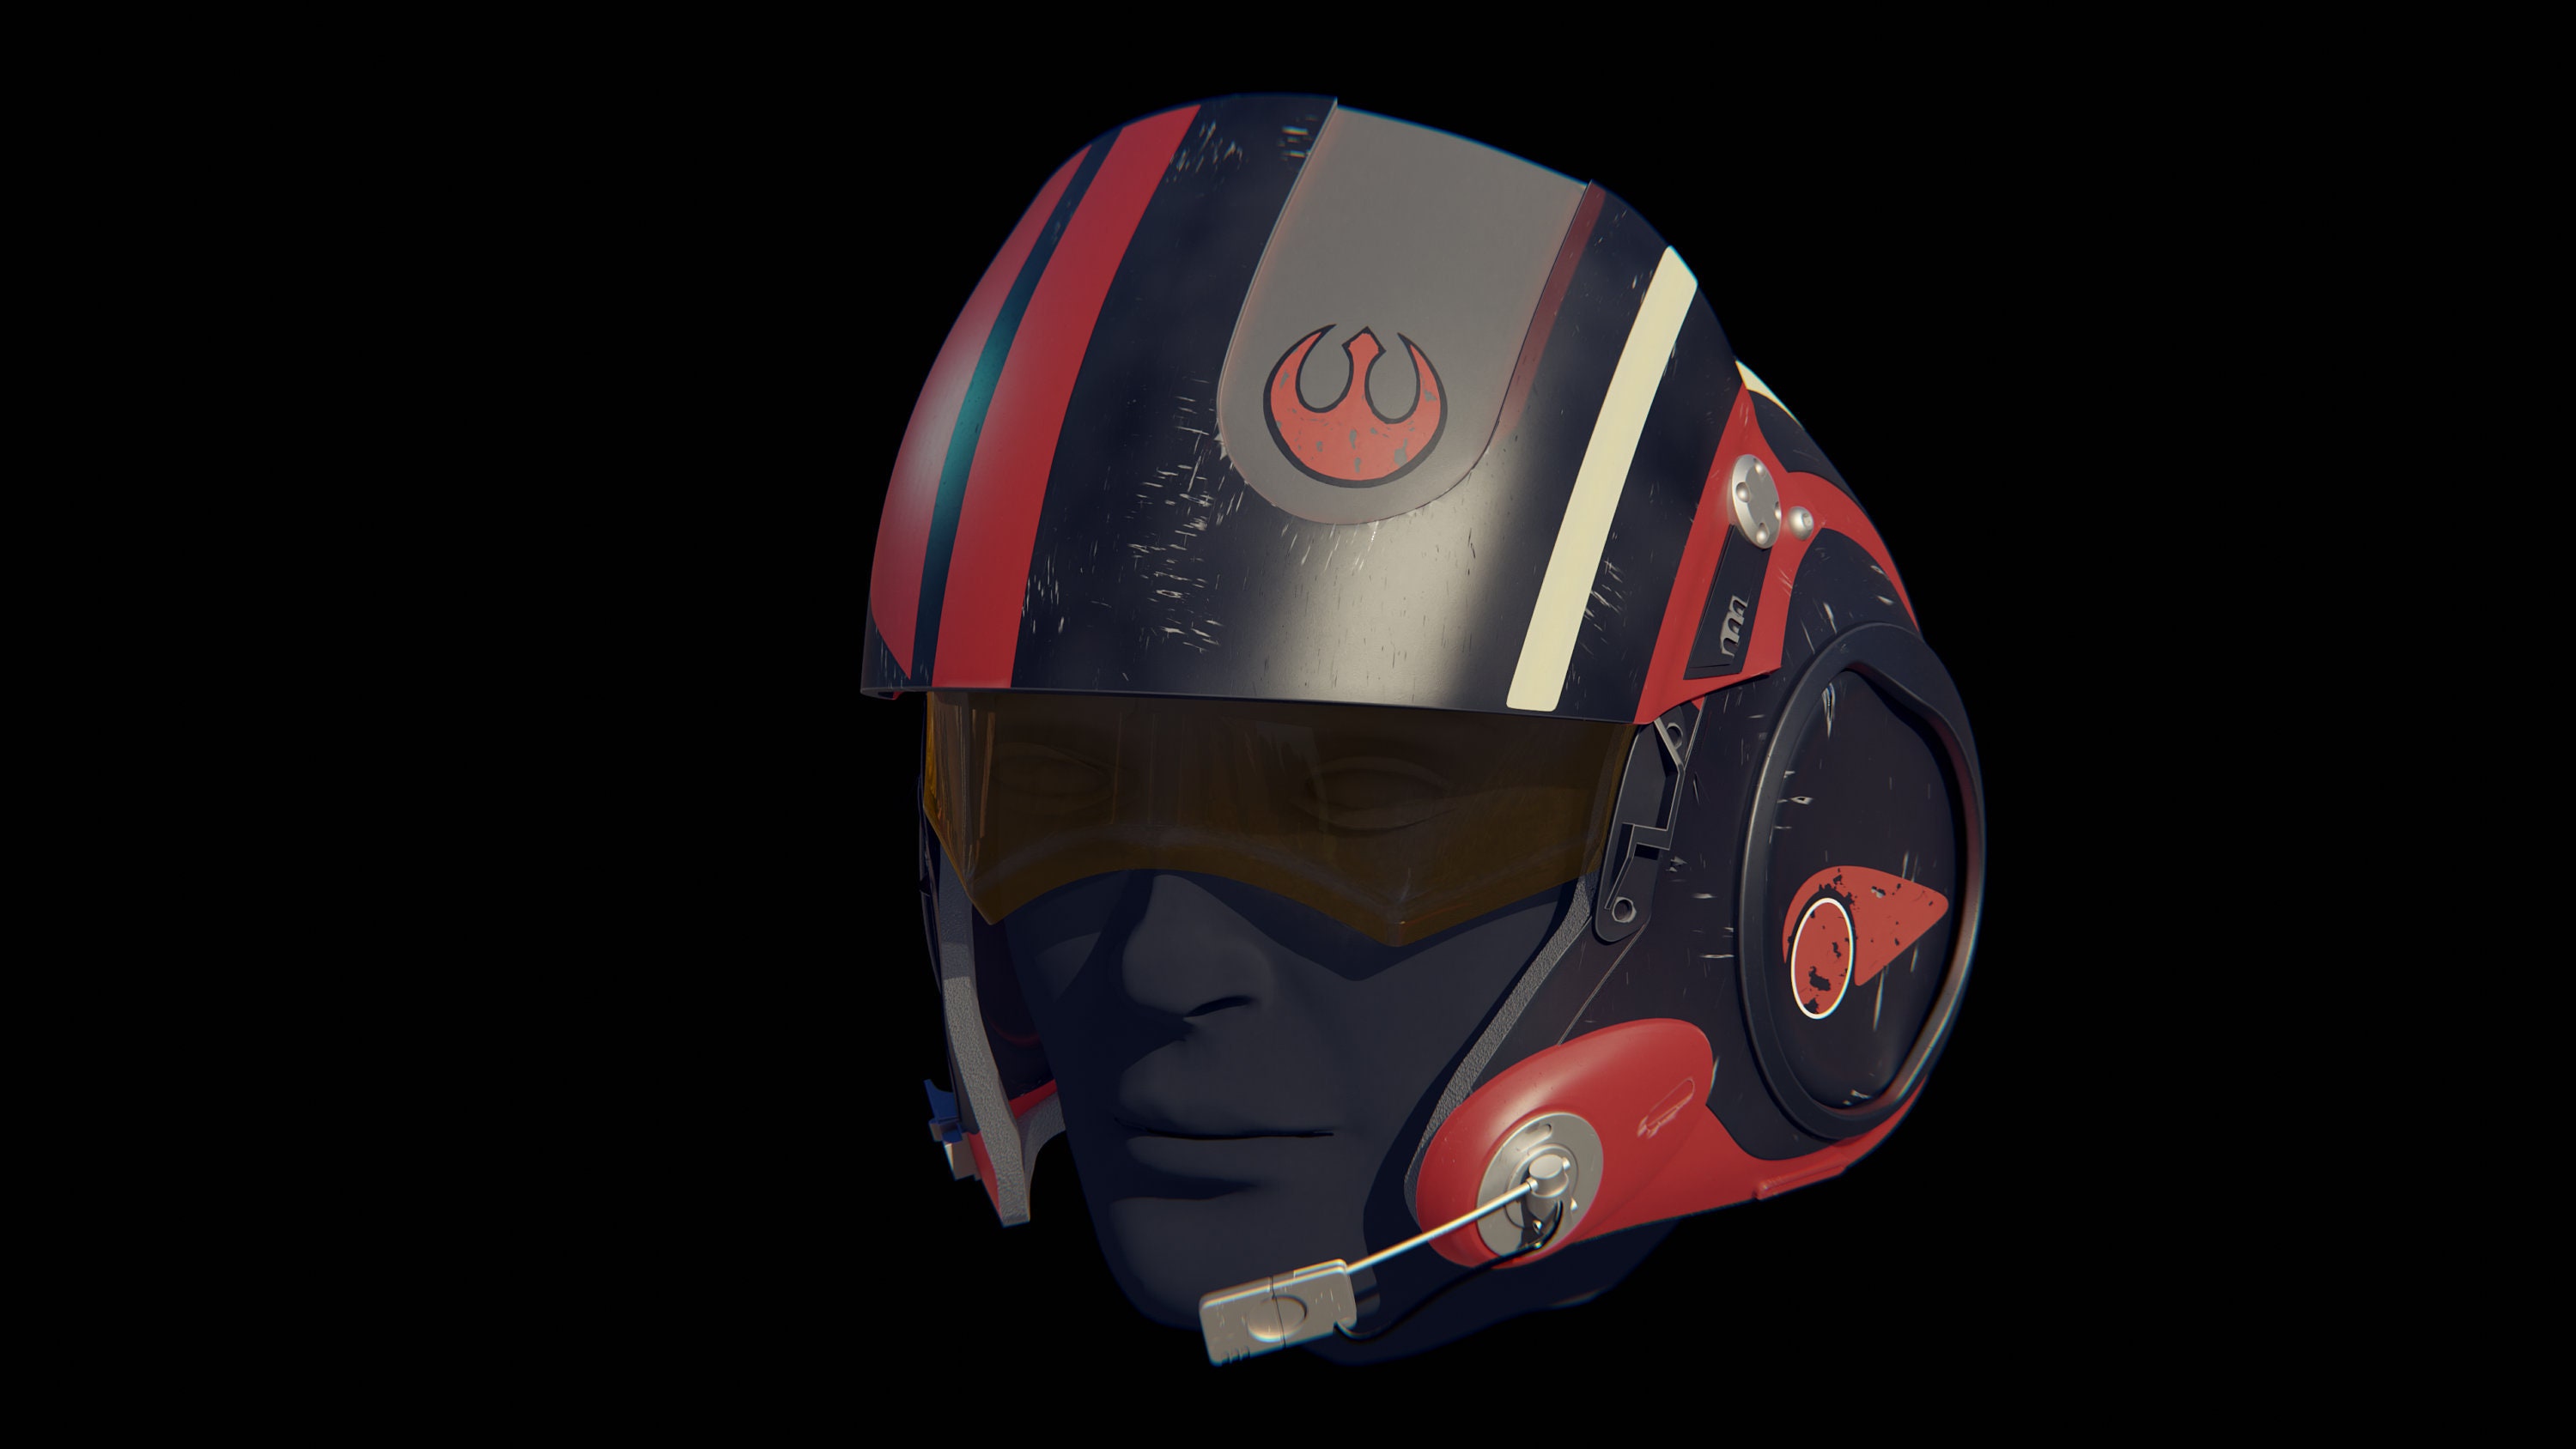 Уникальные шлемы пое. POE Dameron Helmet. POE Dameron Star Wars шлем. По Дэмерон в шлеме. Helmet Pilot x-Wing Star Wars.